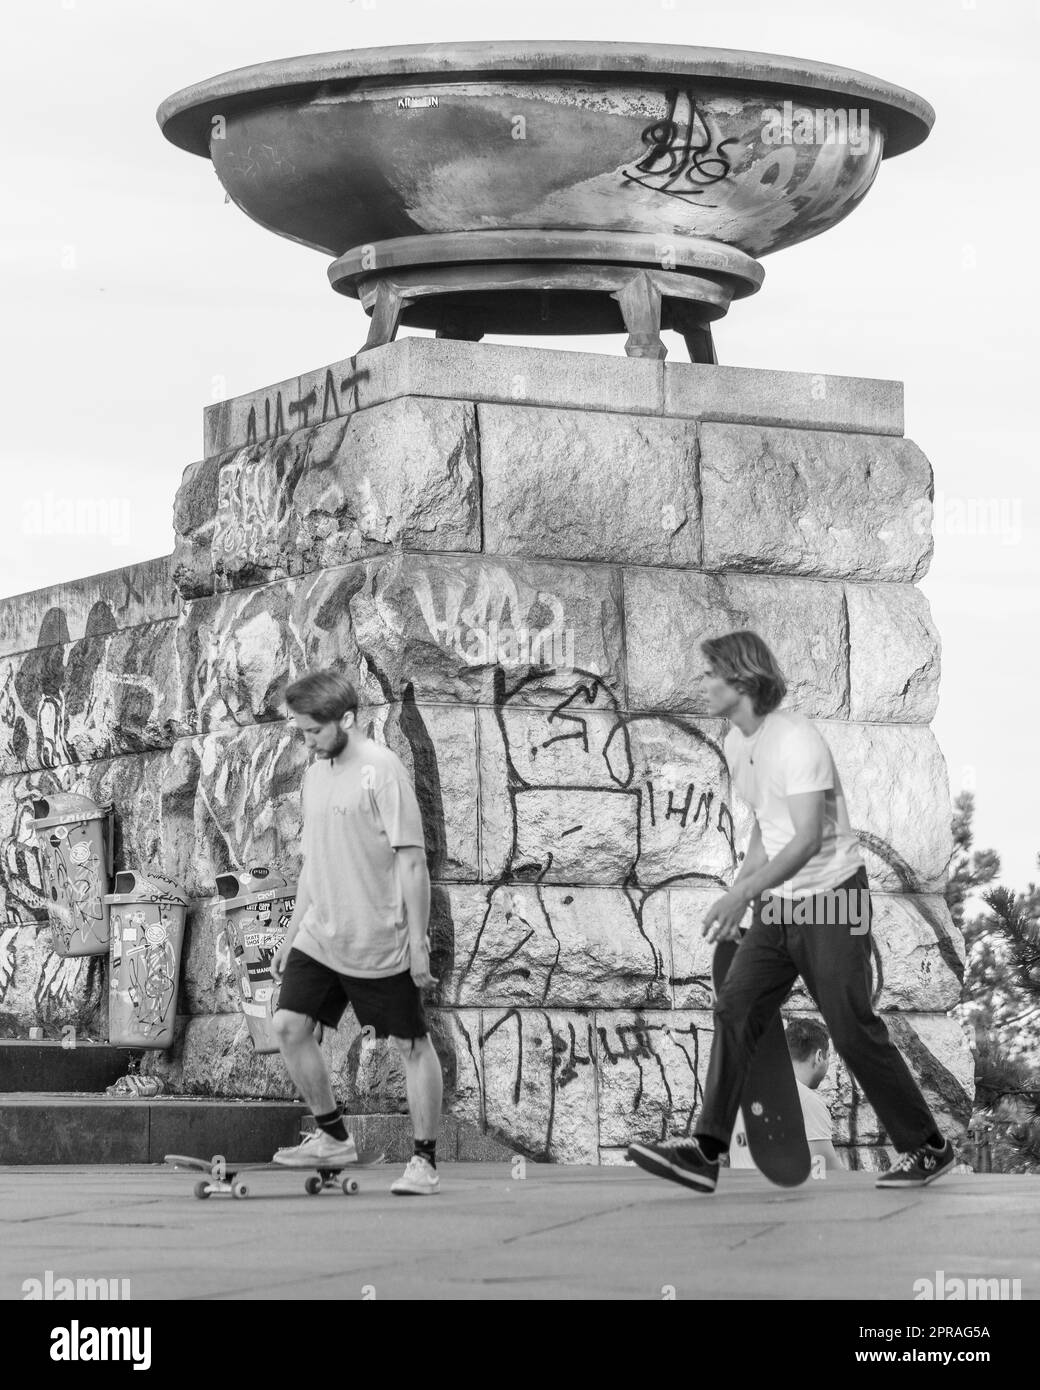 LETNA PARK, PRAGUE, RÉPUBLIQUE TCHÈQUE - skateboarders au parc métronome de Prague. Banque D'Images